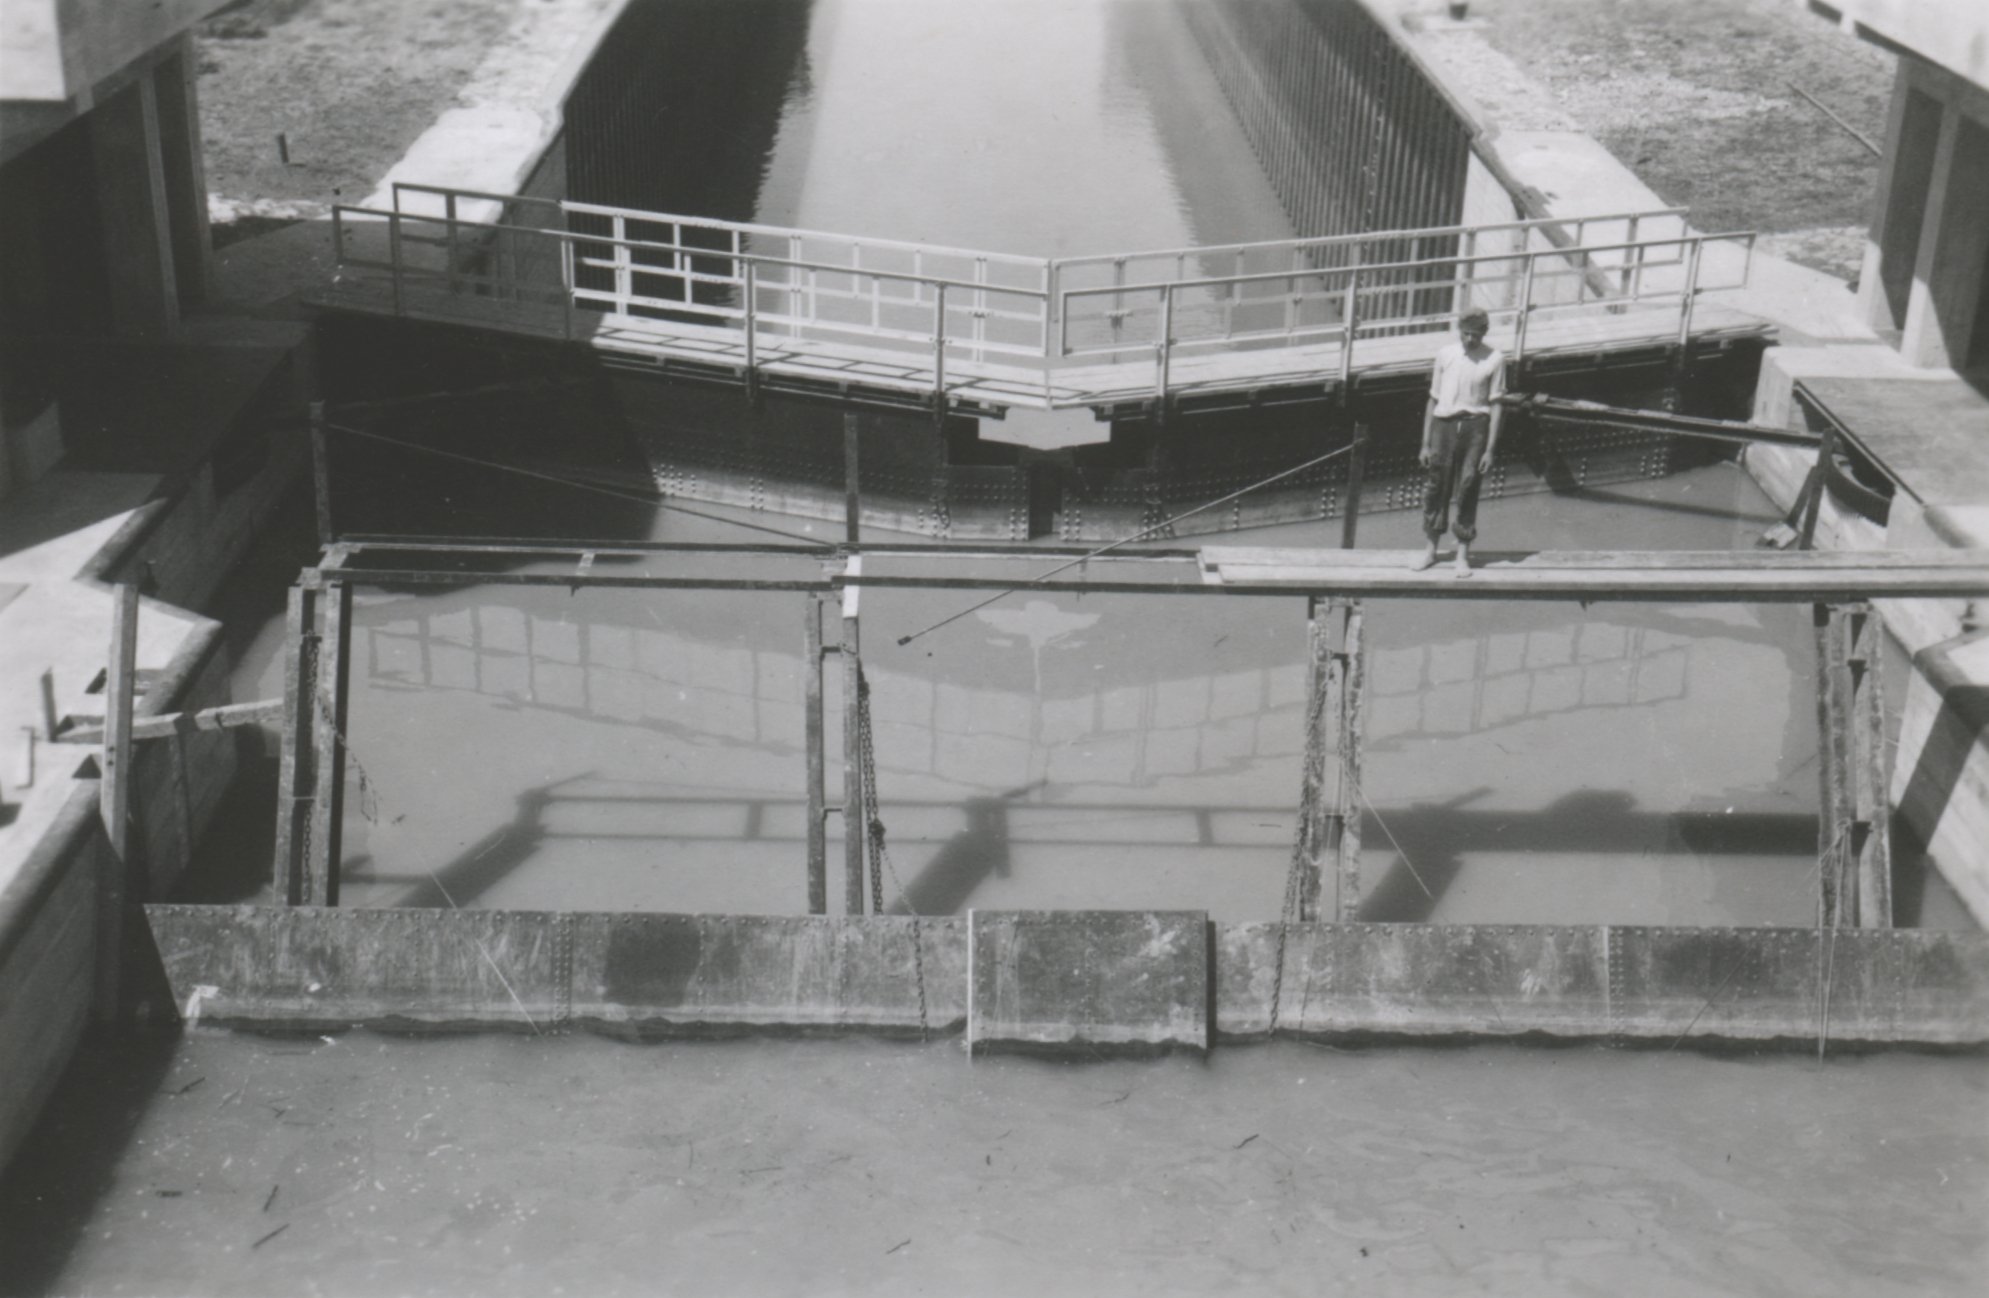 Ideiglenes elzárás a hajózózsilip felső főjénél az úszódaruról nézve, 1943. június 21. (Magyar Környezetvédelmi és Vízügyi Múzeum - Duna Múzeum CC BY-NC-SA)